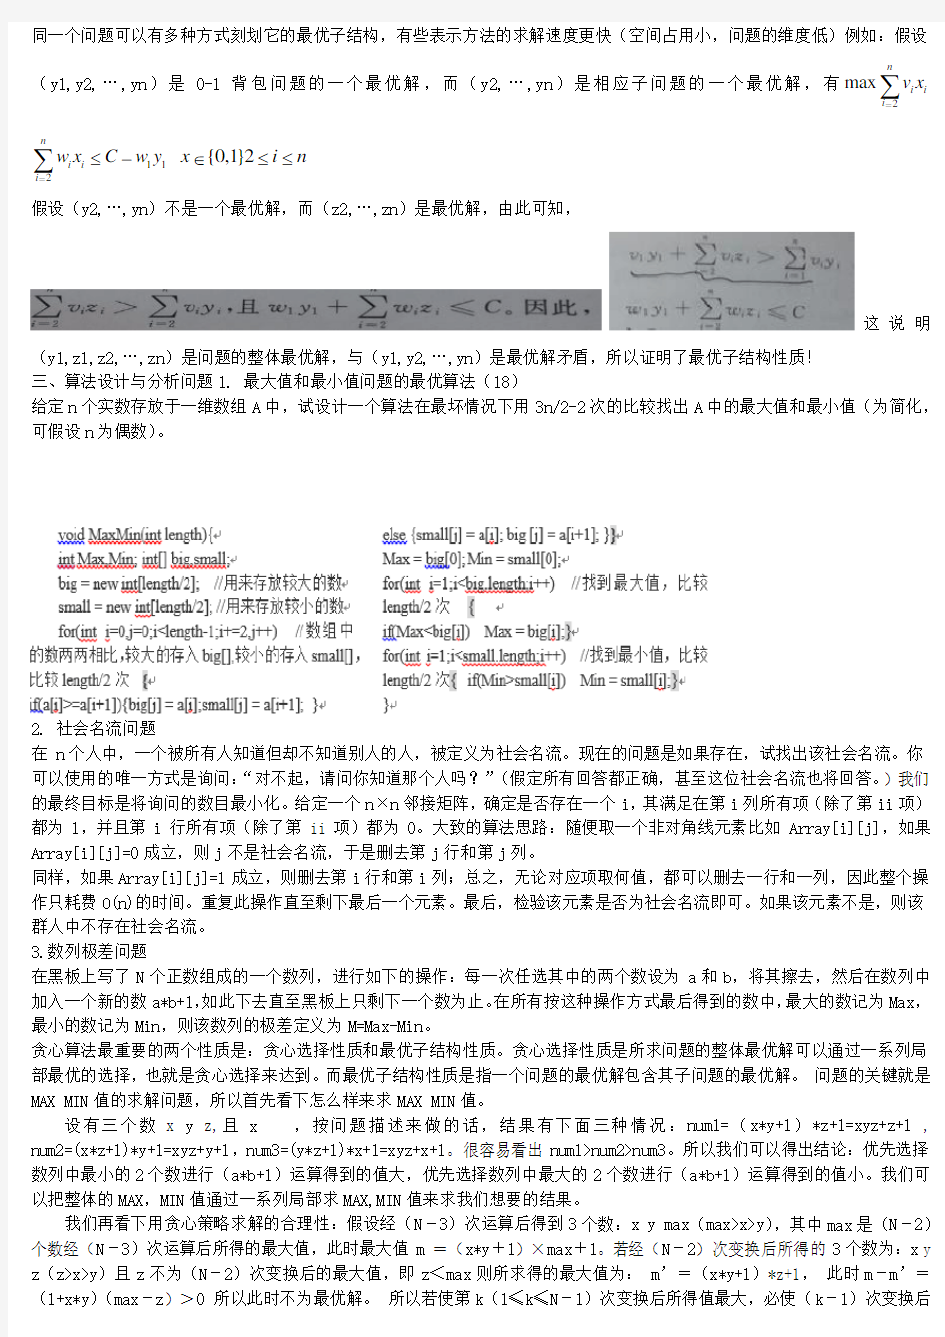 北京工业大学算法设计与分析2014年题库